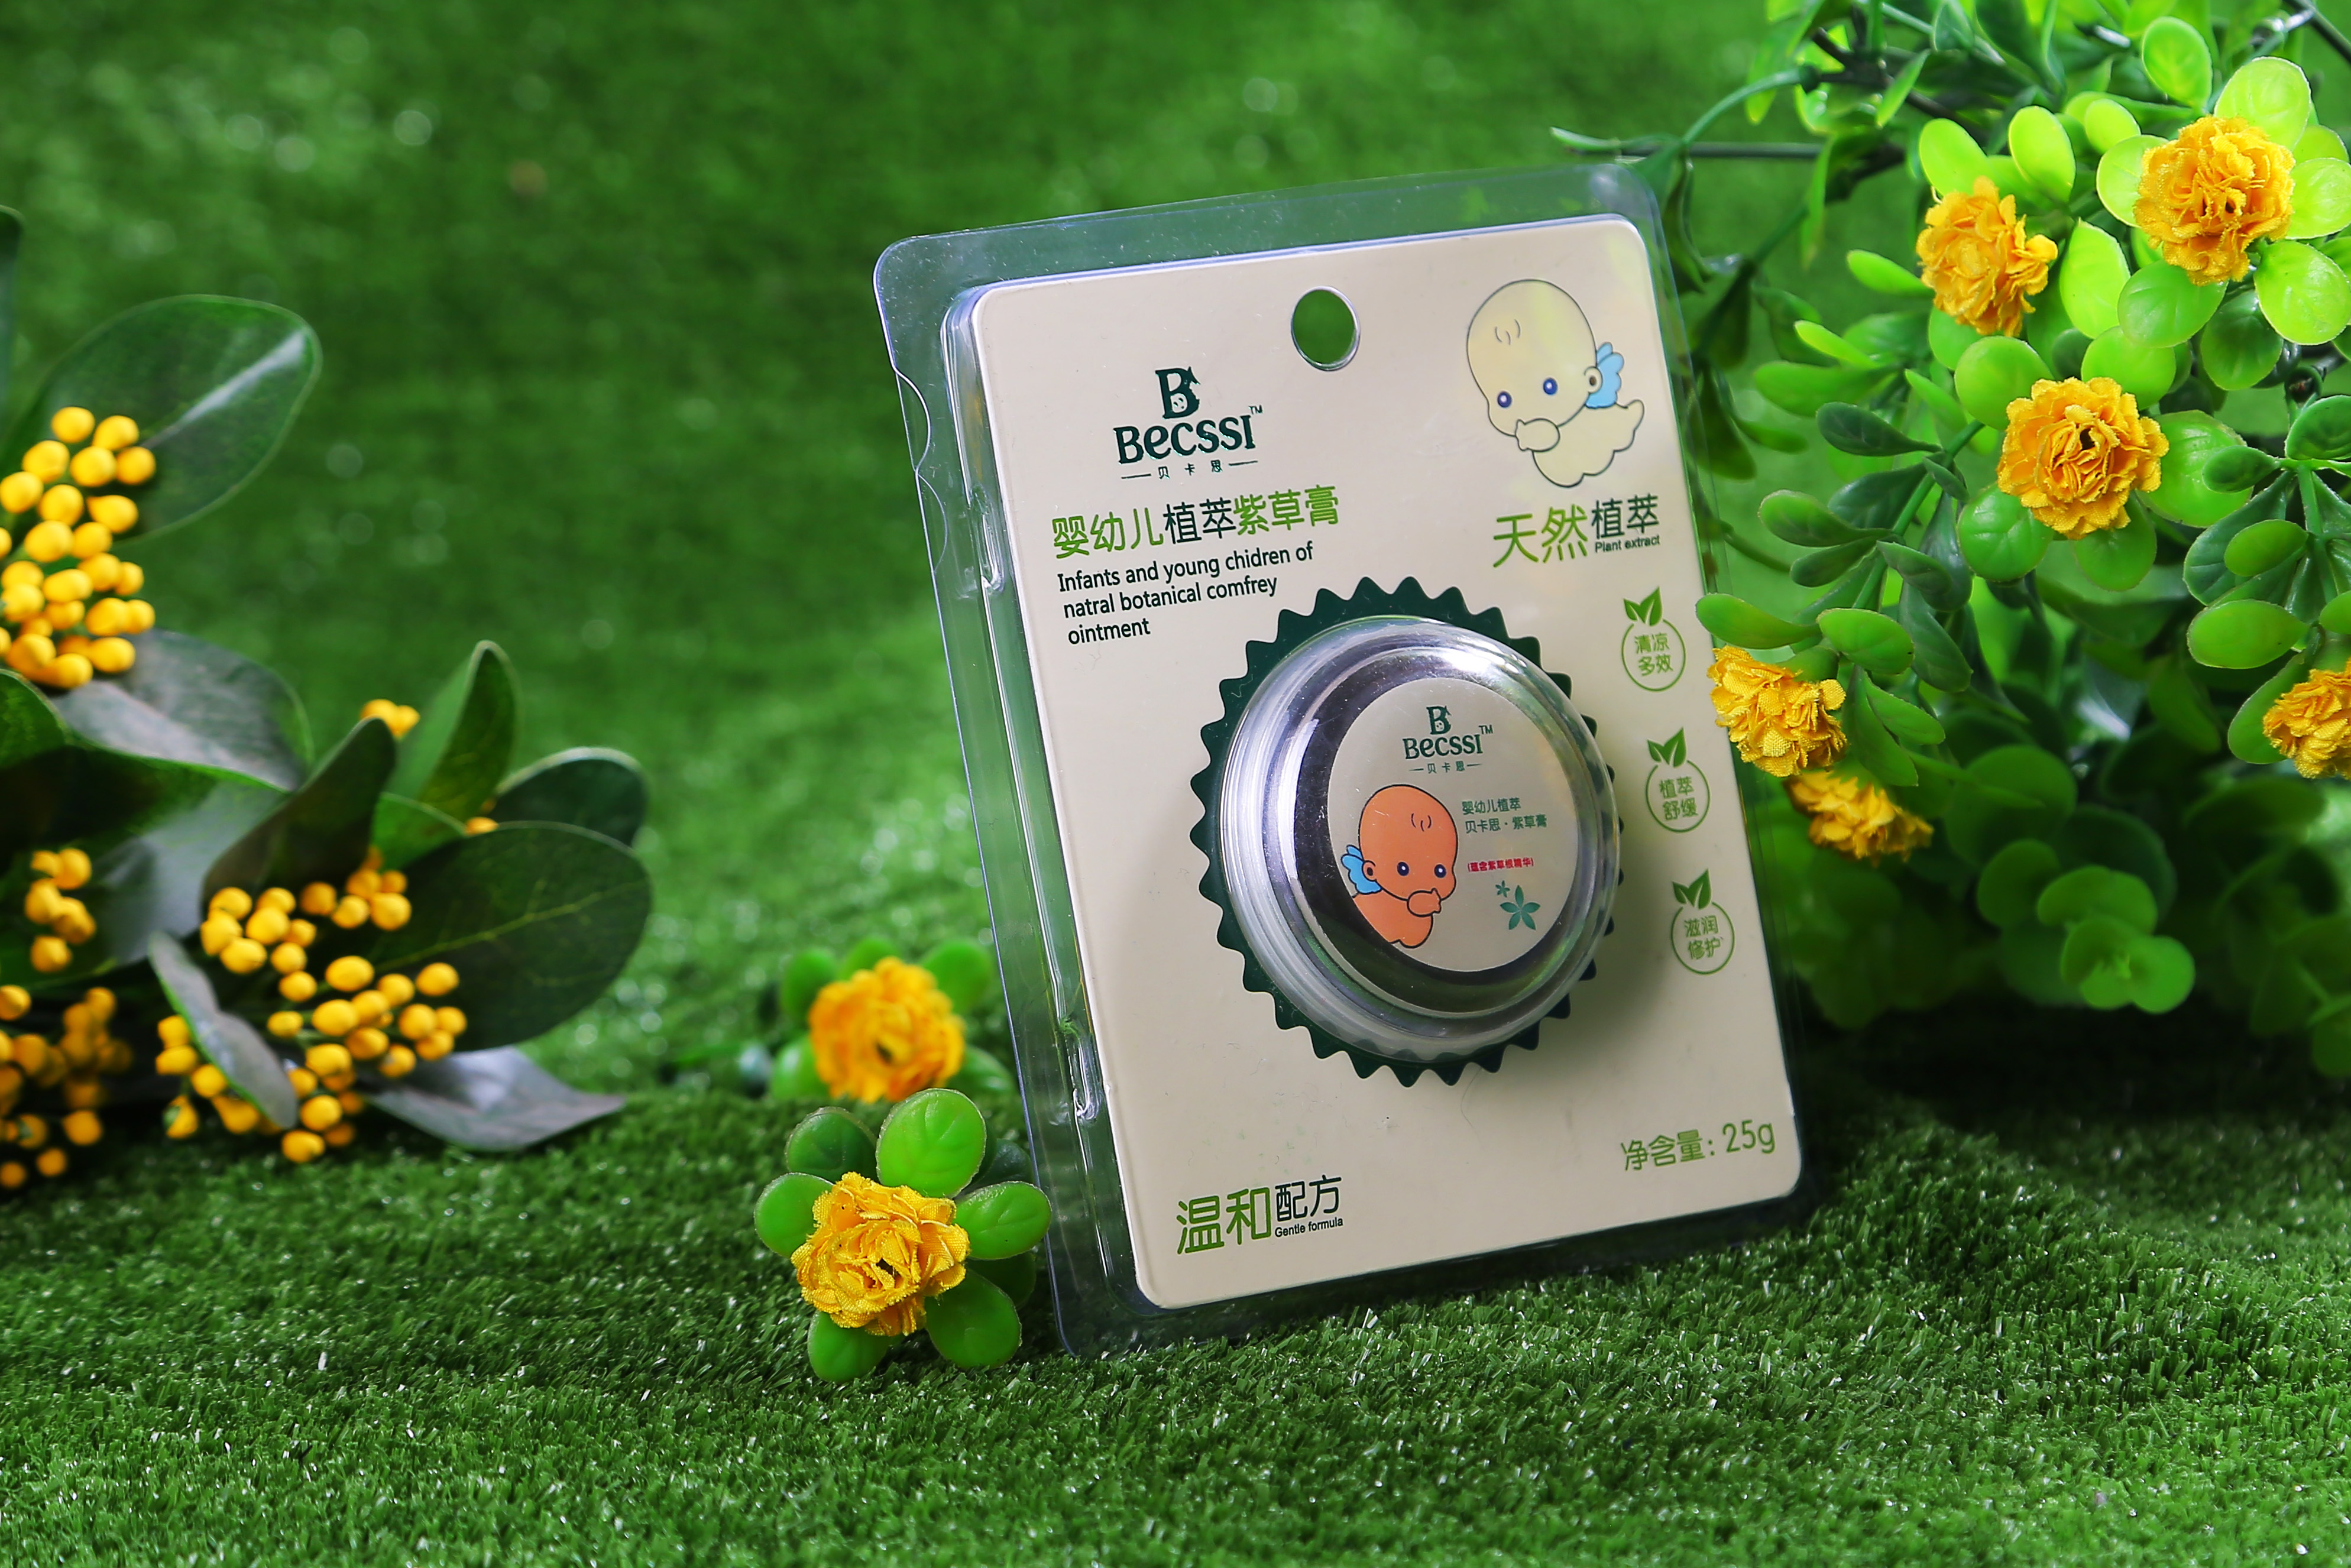 广州贝卡思 婴幼儿紫草膏  专为婴幼儿研制的紫草膏 环保健康安全图片